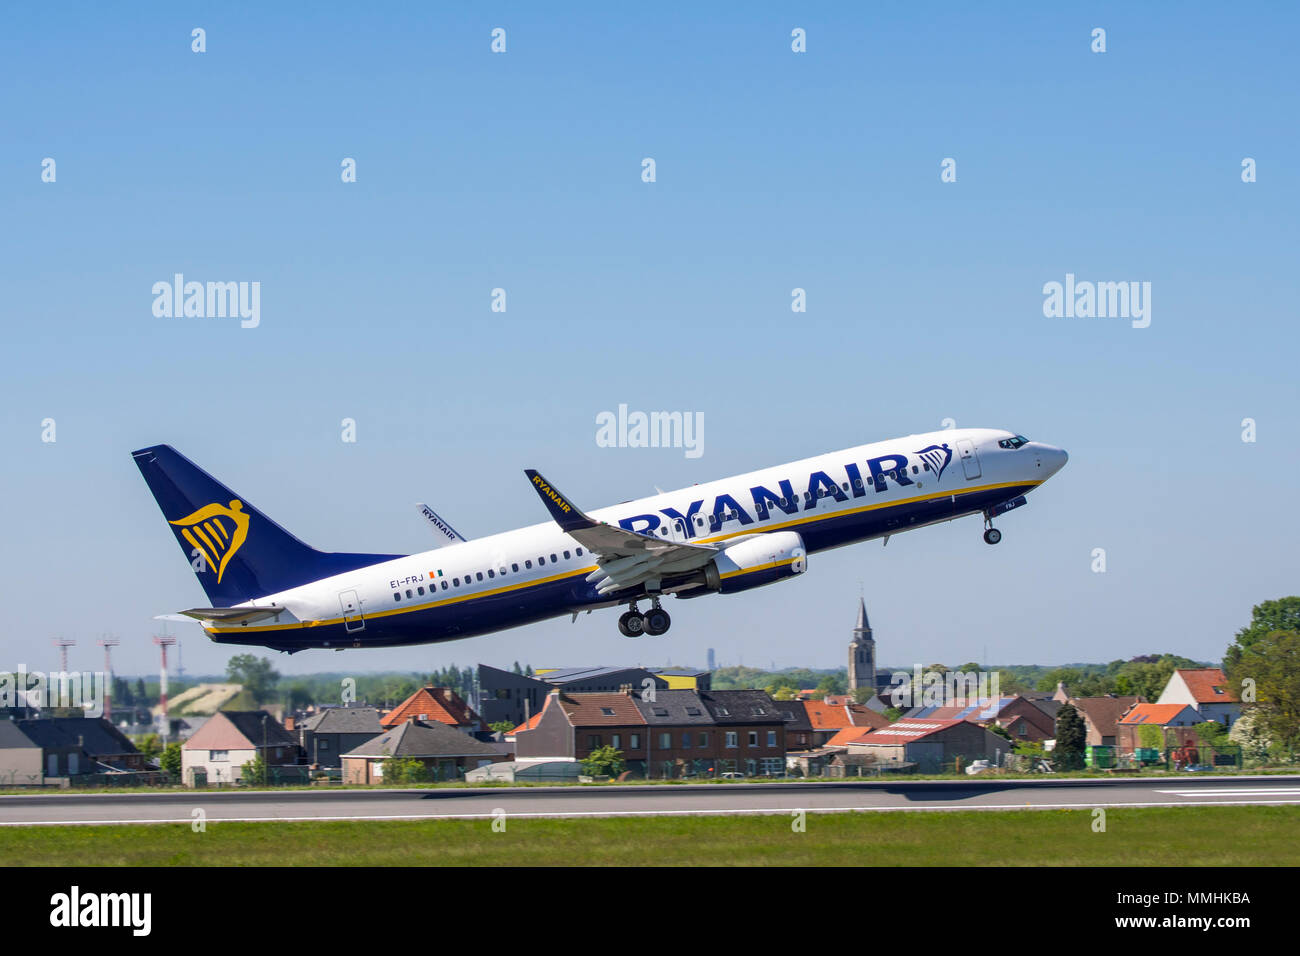 Compagnie aérienne irlandaise à faible coût Banque de photographies et  d'images à haute résolution - Alamy